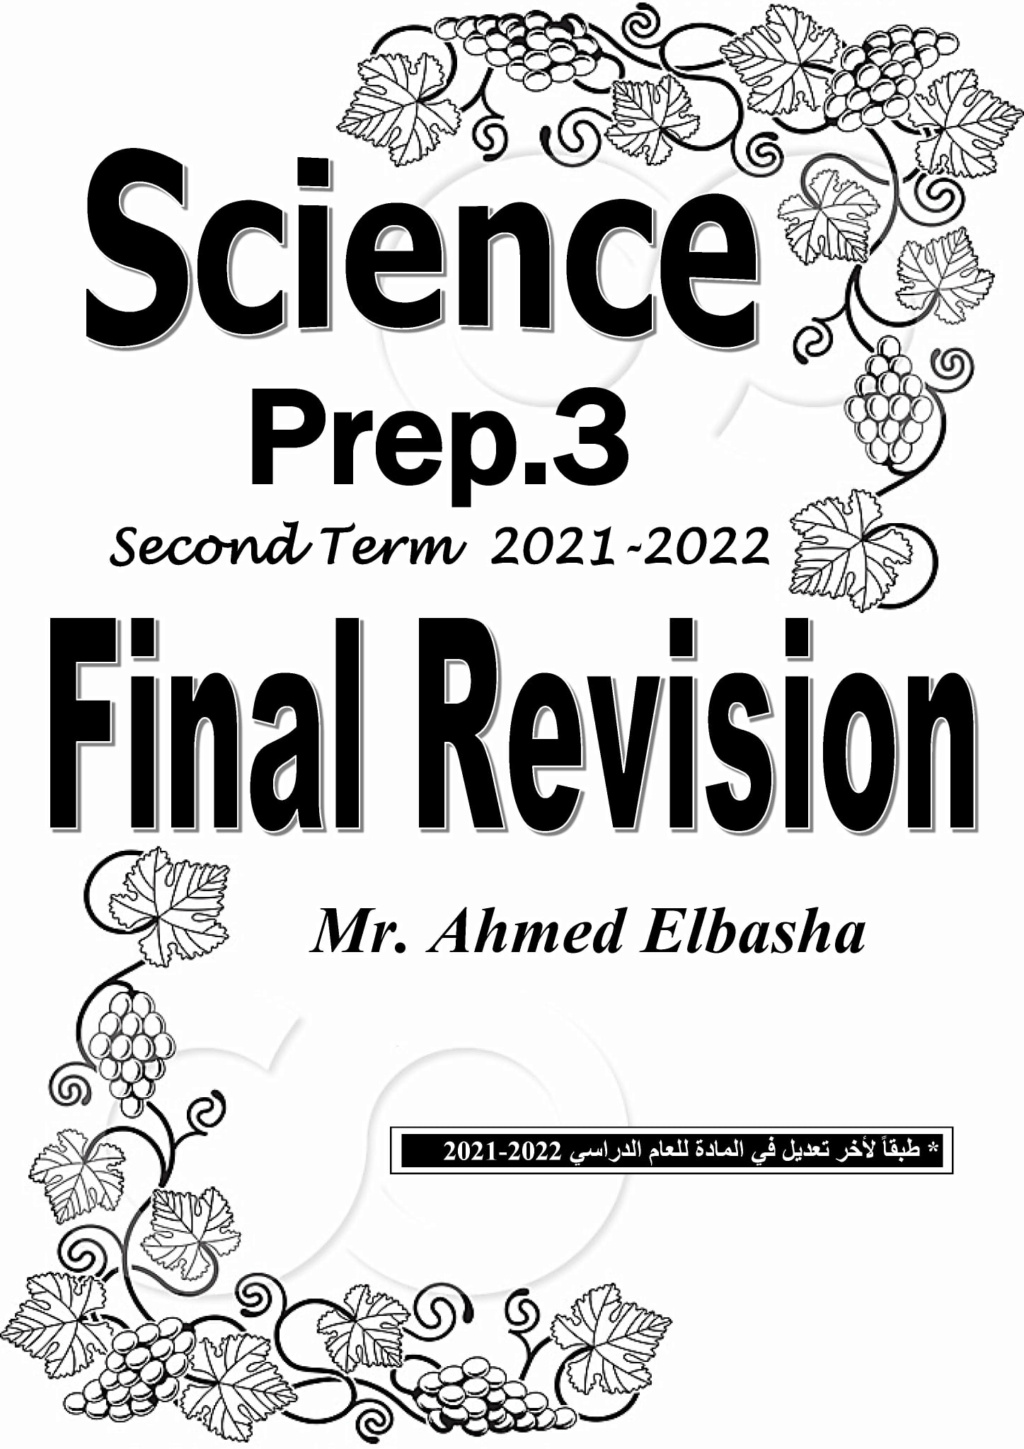  مراجعة Science للصف الثالث الاعدادي ترم ثاني مستر أحمد الباشا 20011